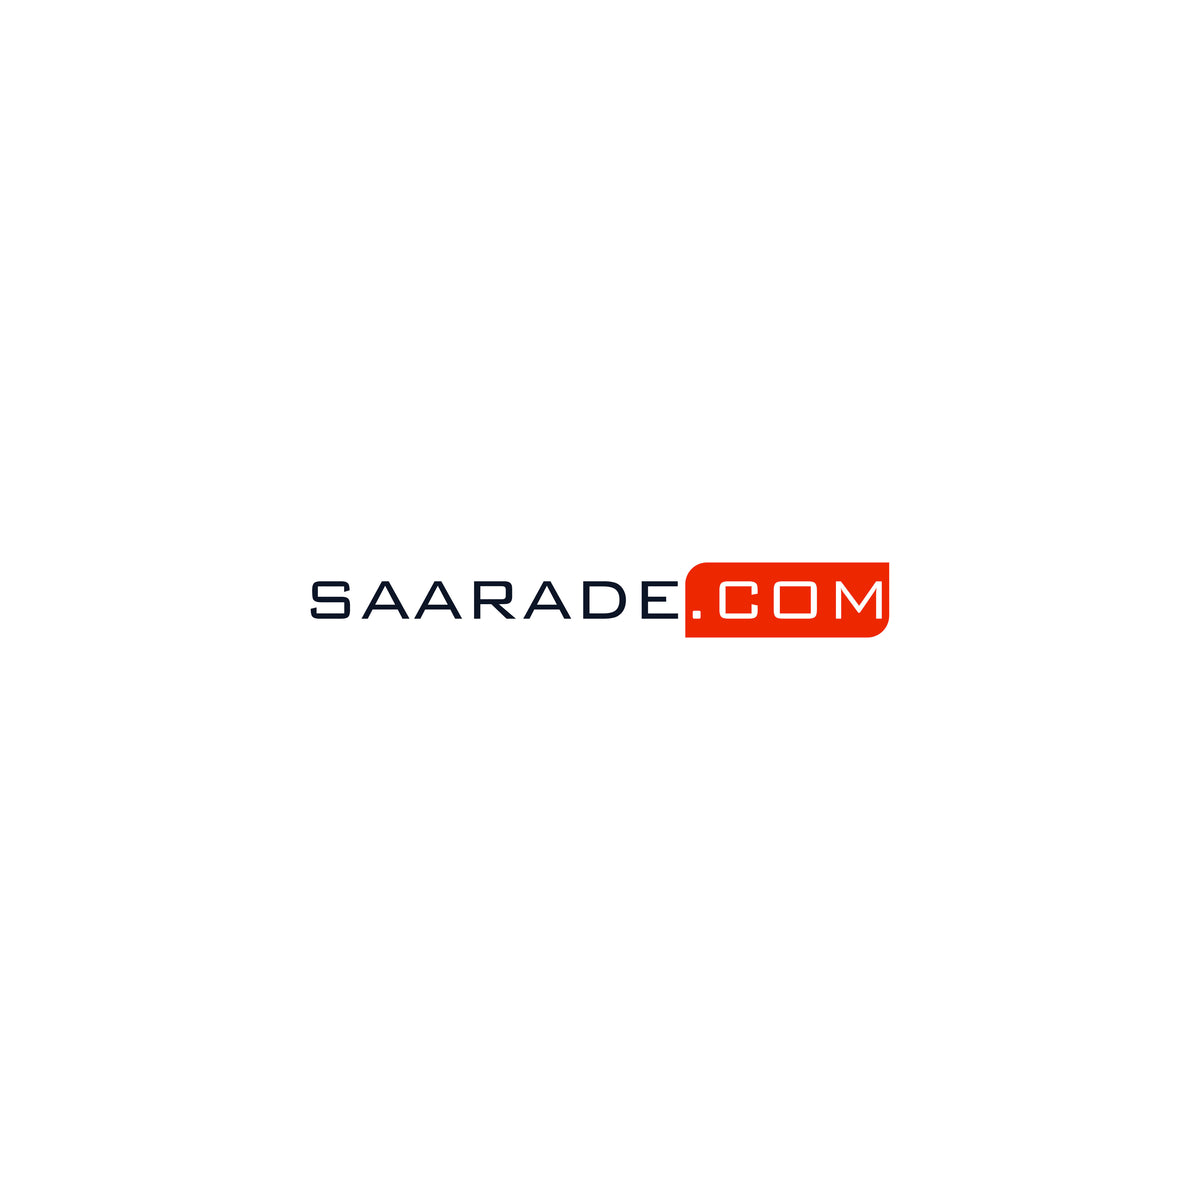 SAARADE.COM